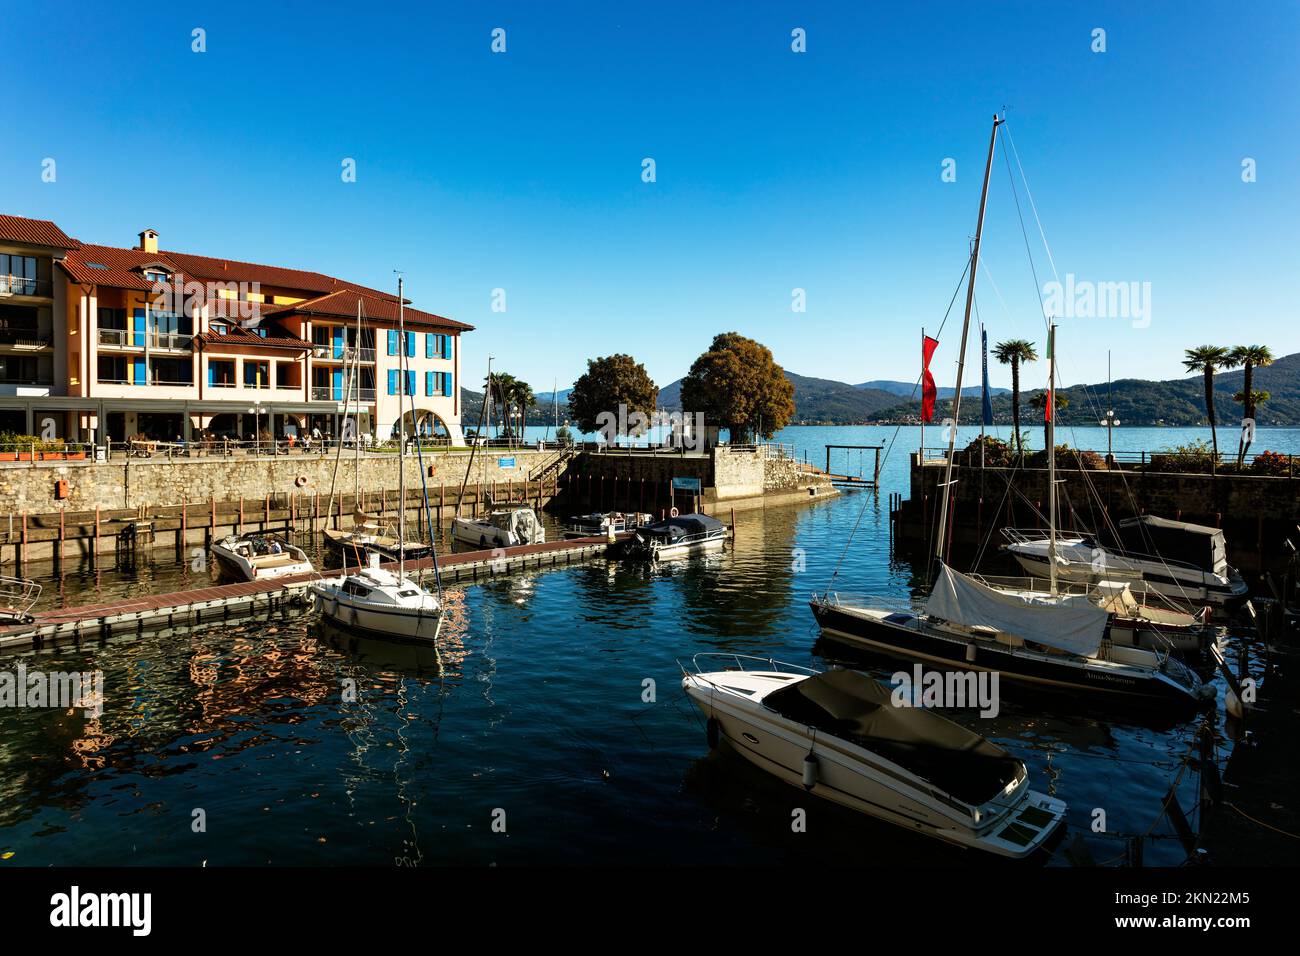 Hapimag Resort Cannero, Cannero Riviera, Lago Maggiore, Verban-Cusio-Ossola, Piamonte, Italia Foto de stock